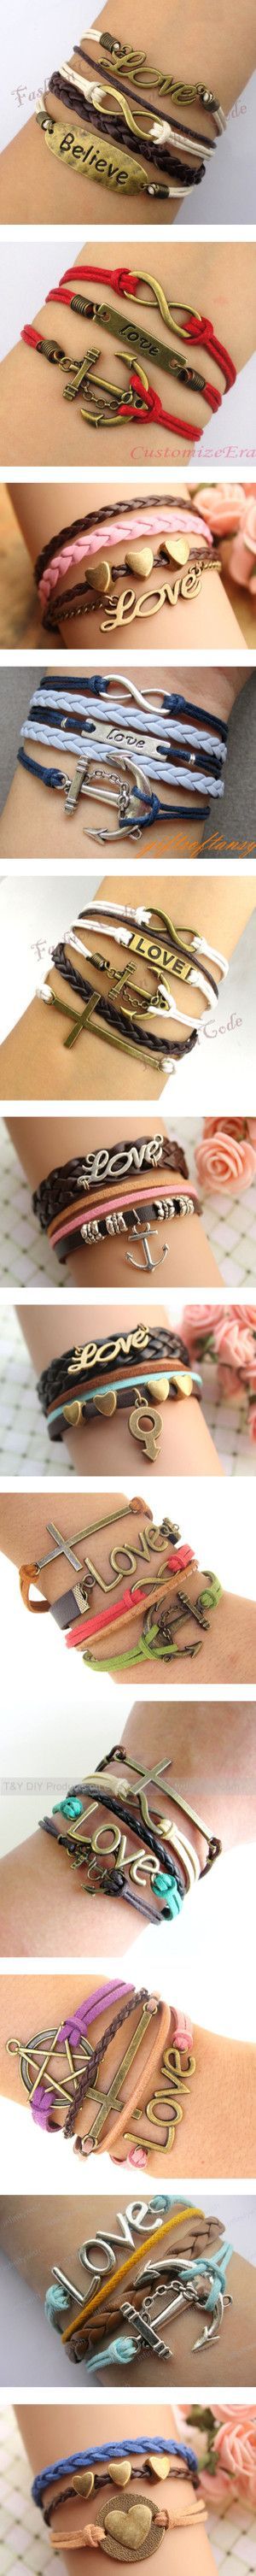 Bracelets love love love!